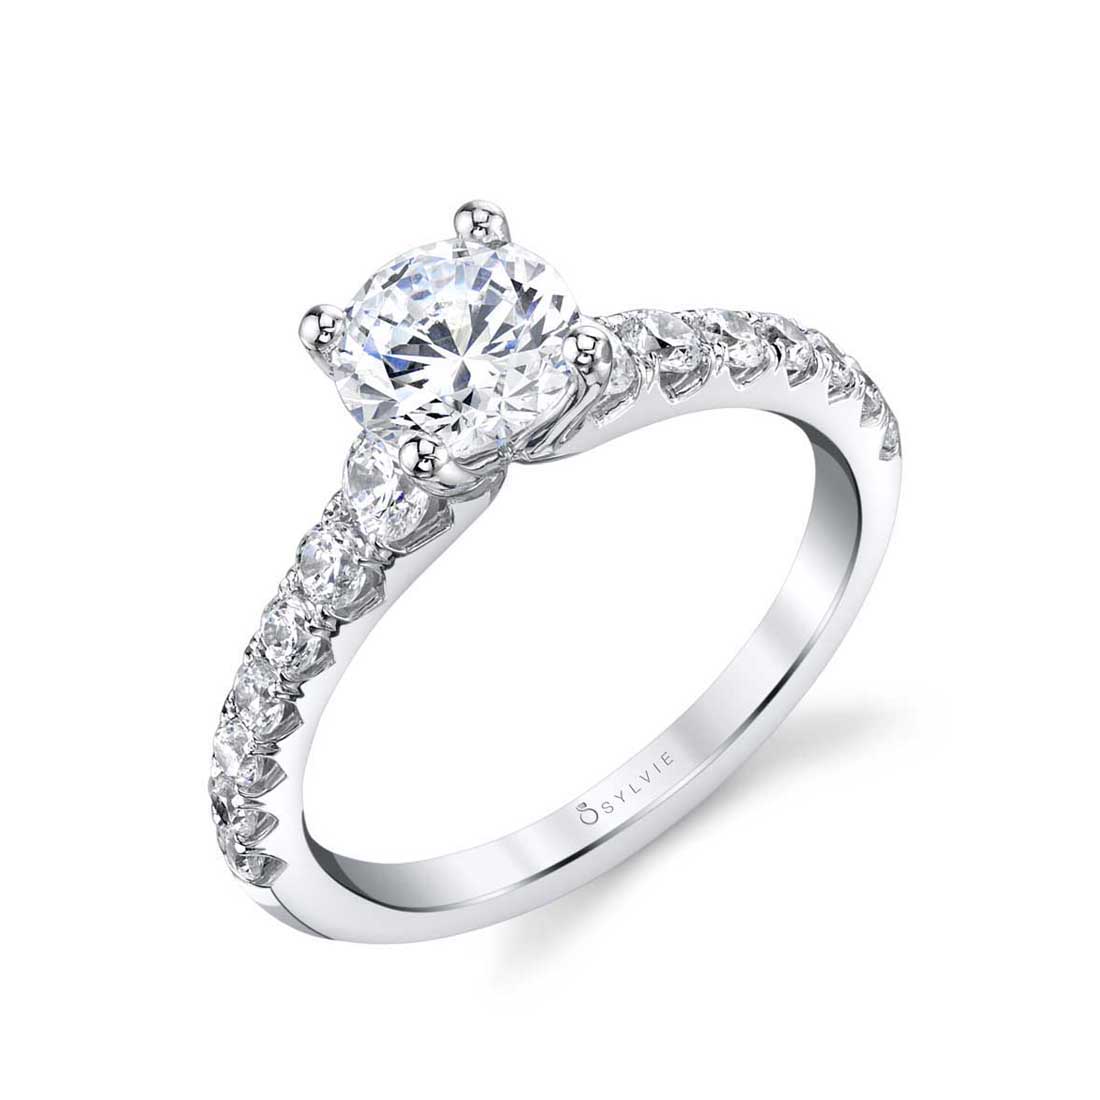 Sylvie Veronique Classic Engagement Ring - S1860